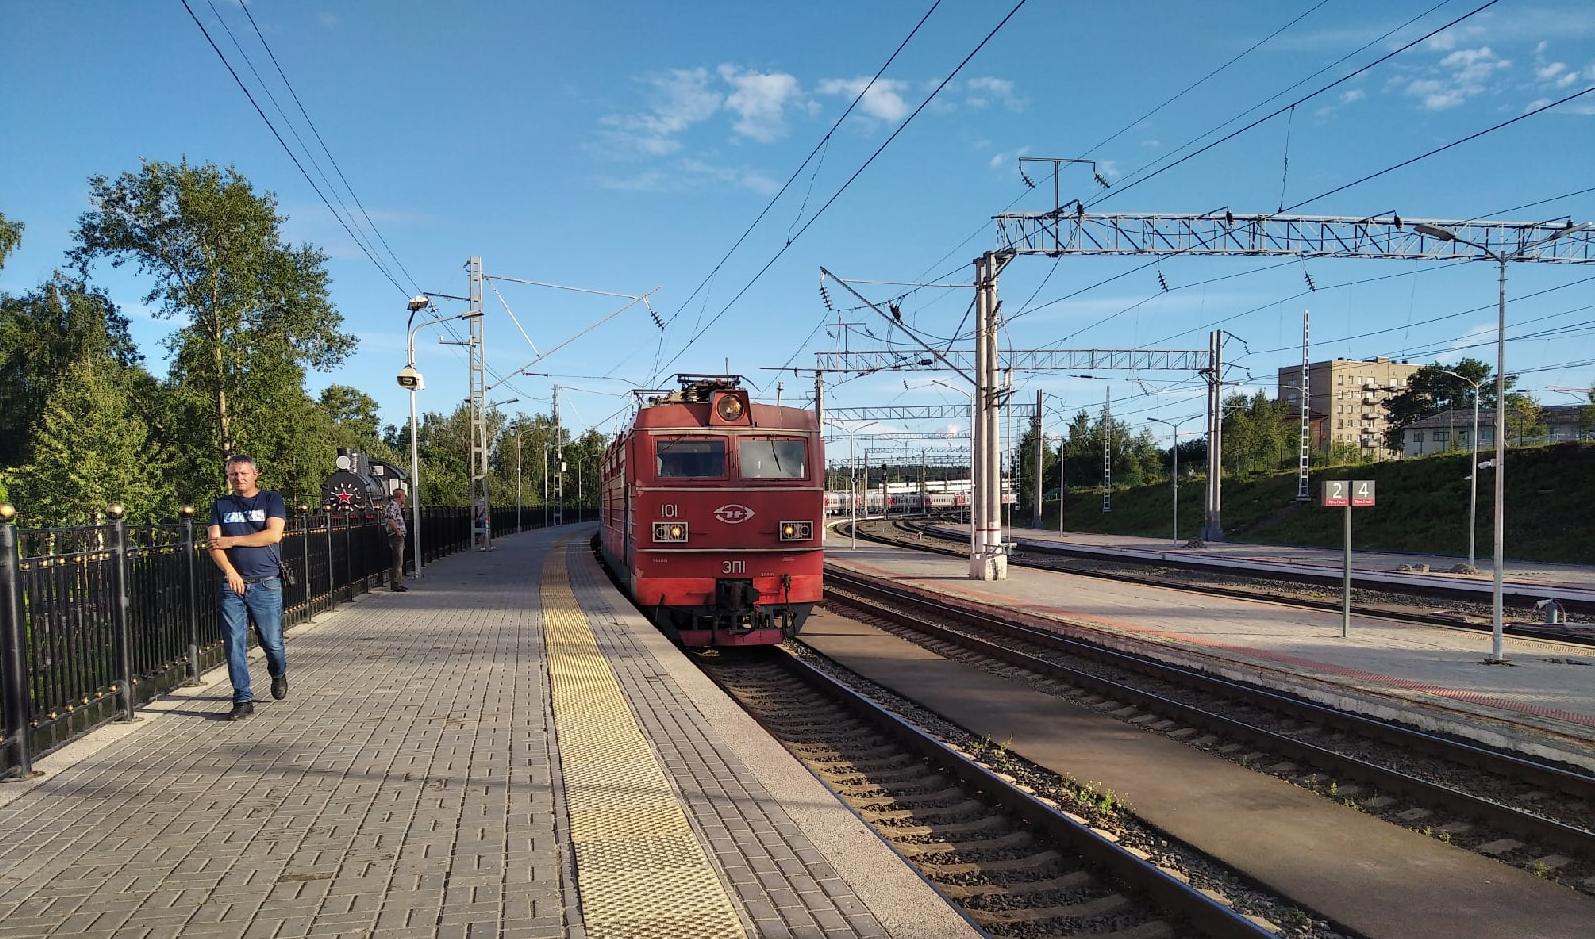 Venäjän rautatiet Oy ja Karjalan hallitus käynnistävät ensi vuonna Lotinapellon ja Sortavalan välille kaavaillun uuden, entistä mukavamman junan. Kuva: kuvituskuva / Margarita Pehkonen